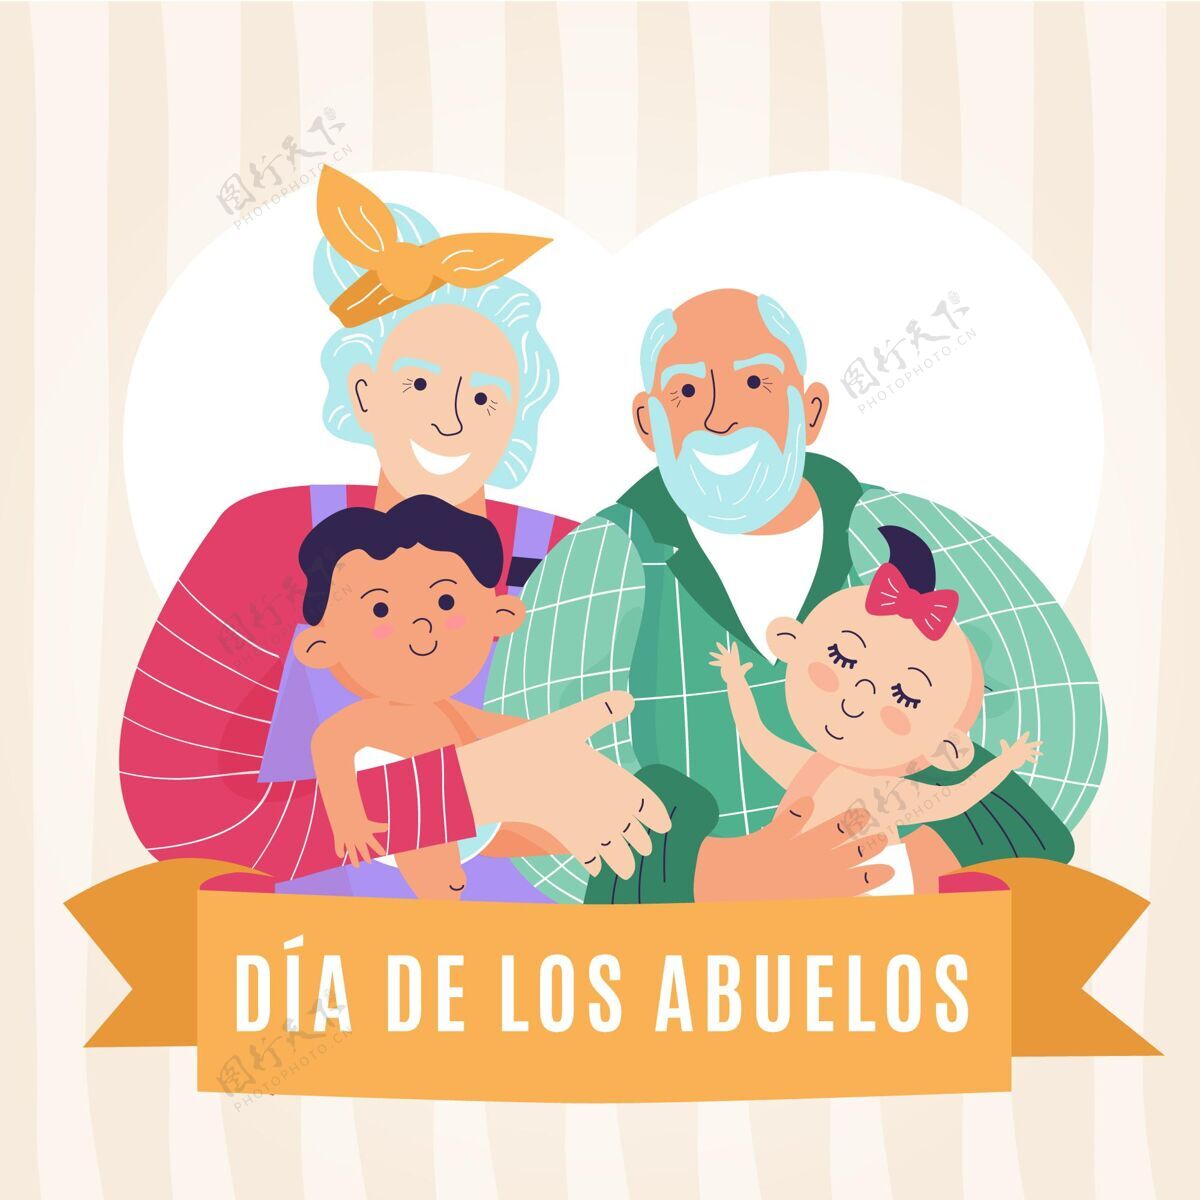 迪亚德洛斯阿布埃洛斯Diadelosabuelos插图节日祖父家庭